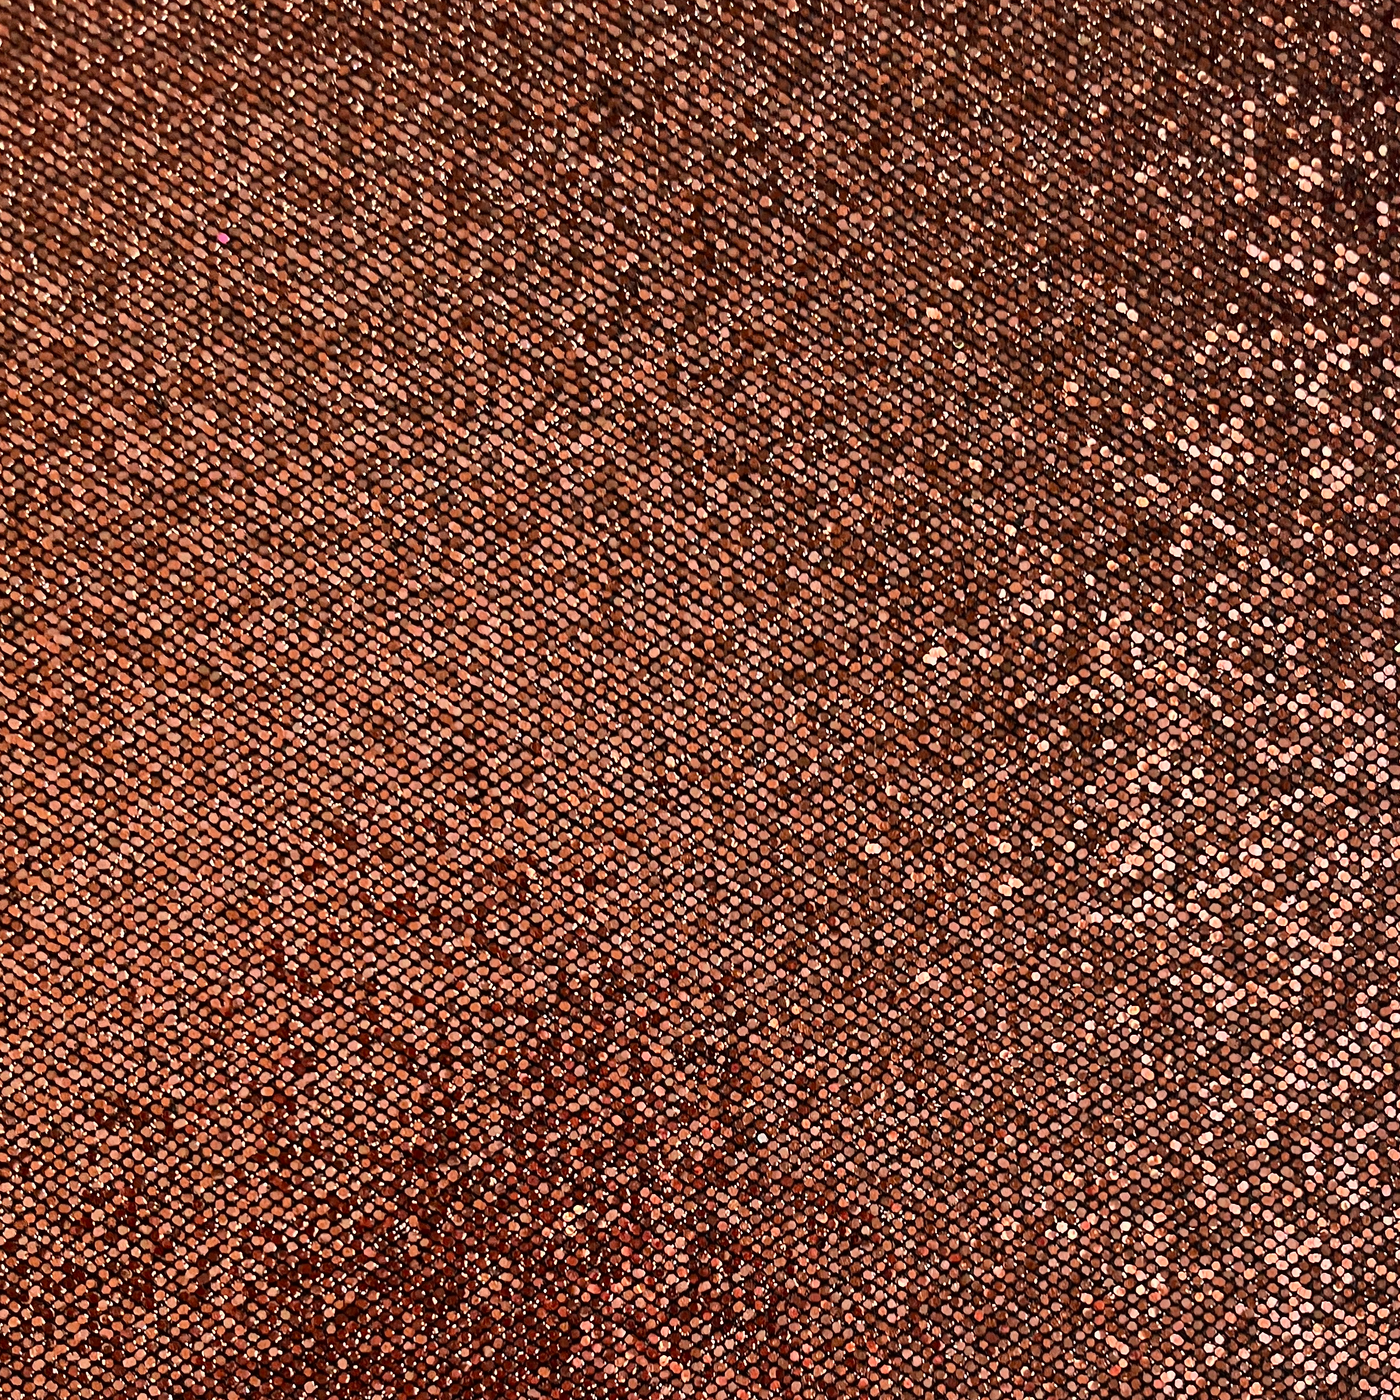 COPPER Sequin Glitter Cardstock - Copper orange disco ball glitter